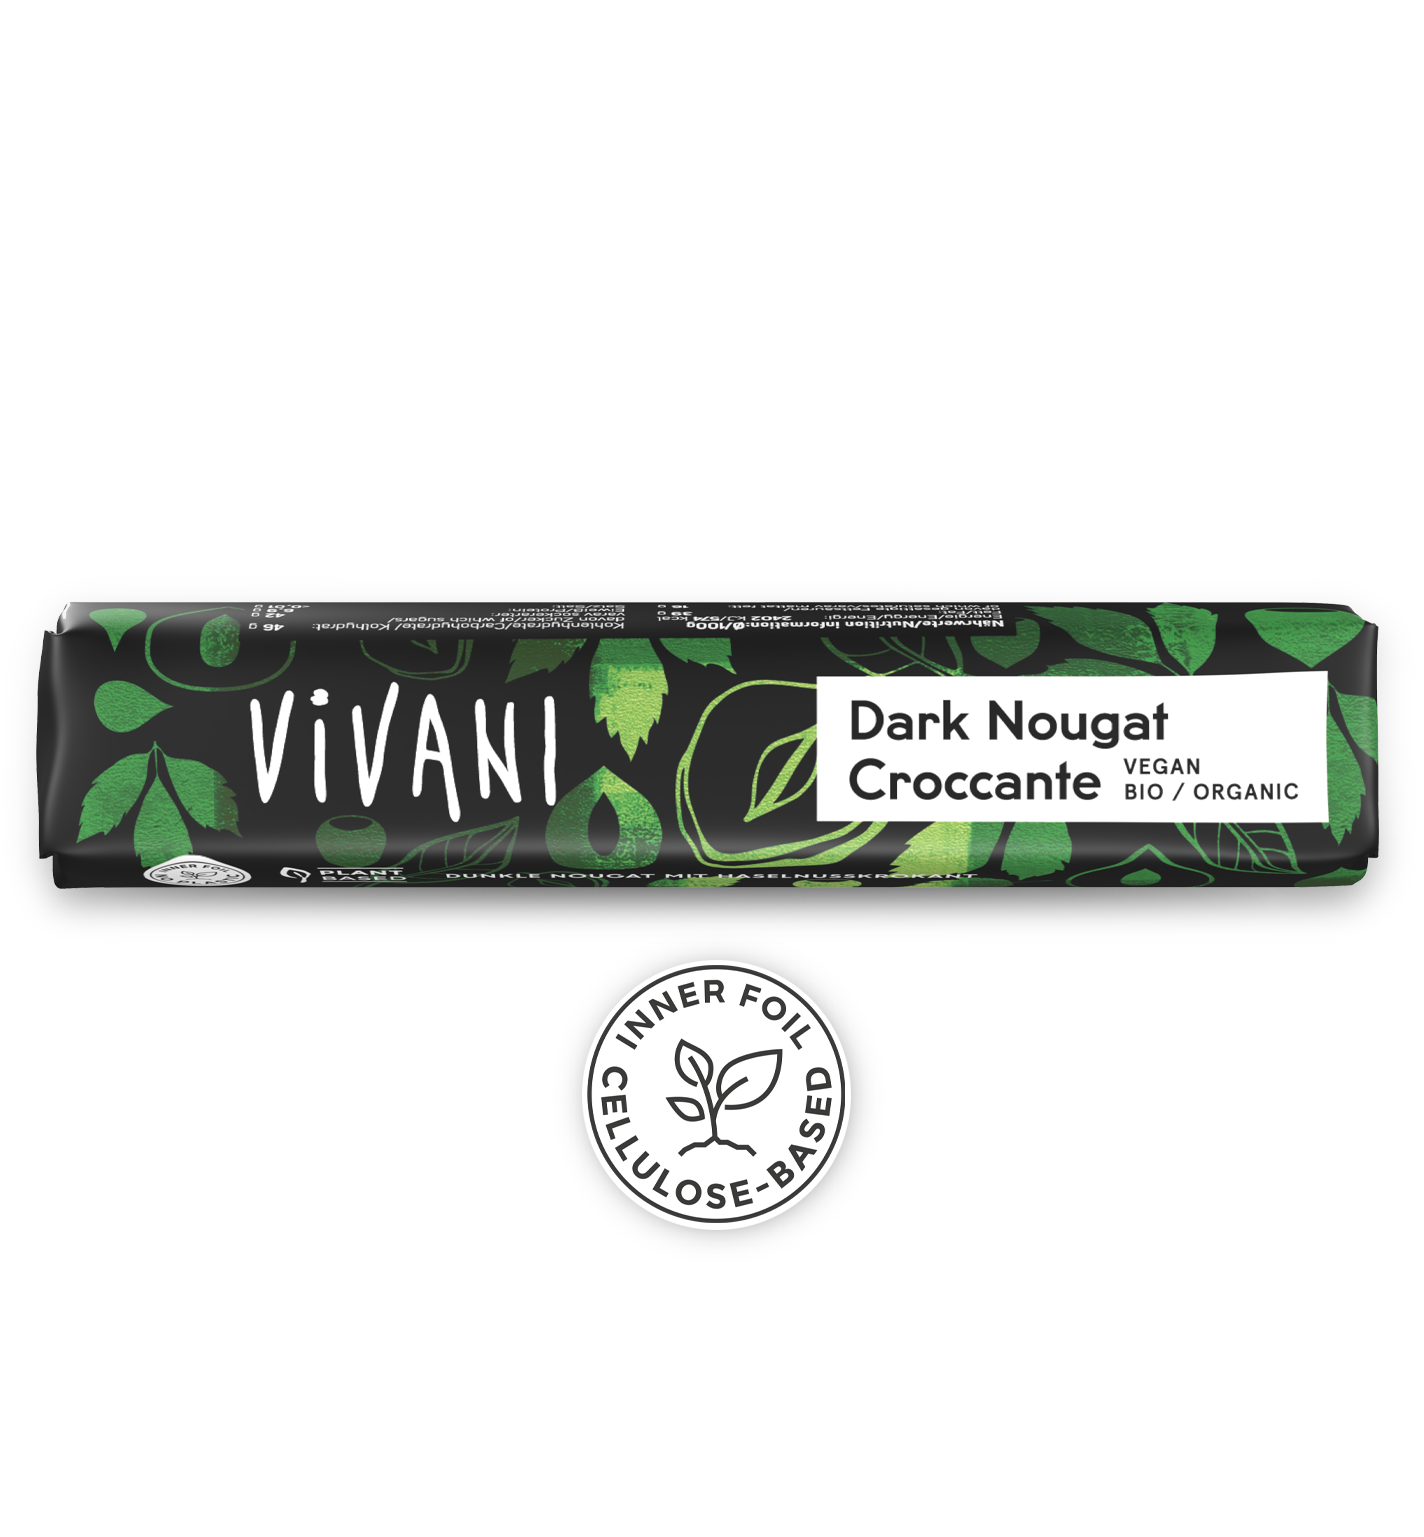 VIVANIs veganer Bio-Schokoladenriegel Dark Nougat Croccante mit hohem Nussanteil und knackigem Haselnusskrokant